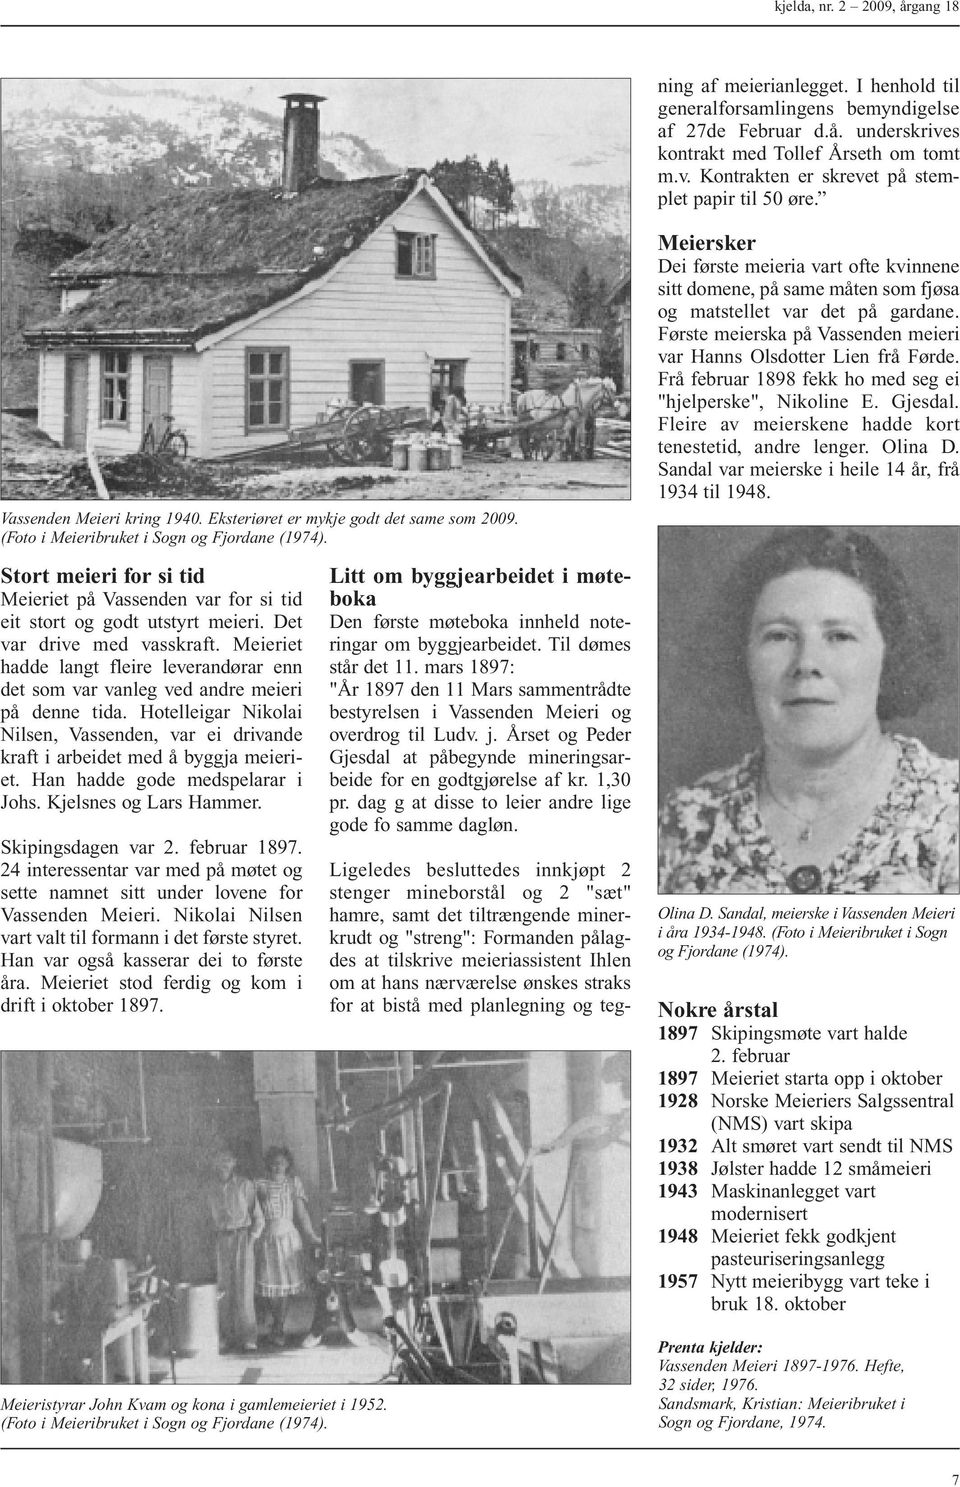 Vassenden Meieri kring 1940. Eksteriøret er mykje godt det same som 2009. (Foto i Meieribruket i Sogn og Fjordane (1974).